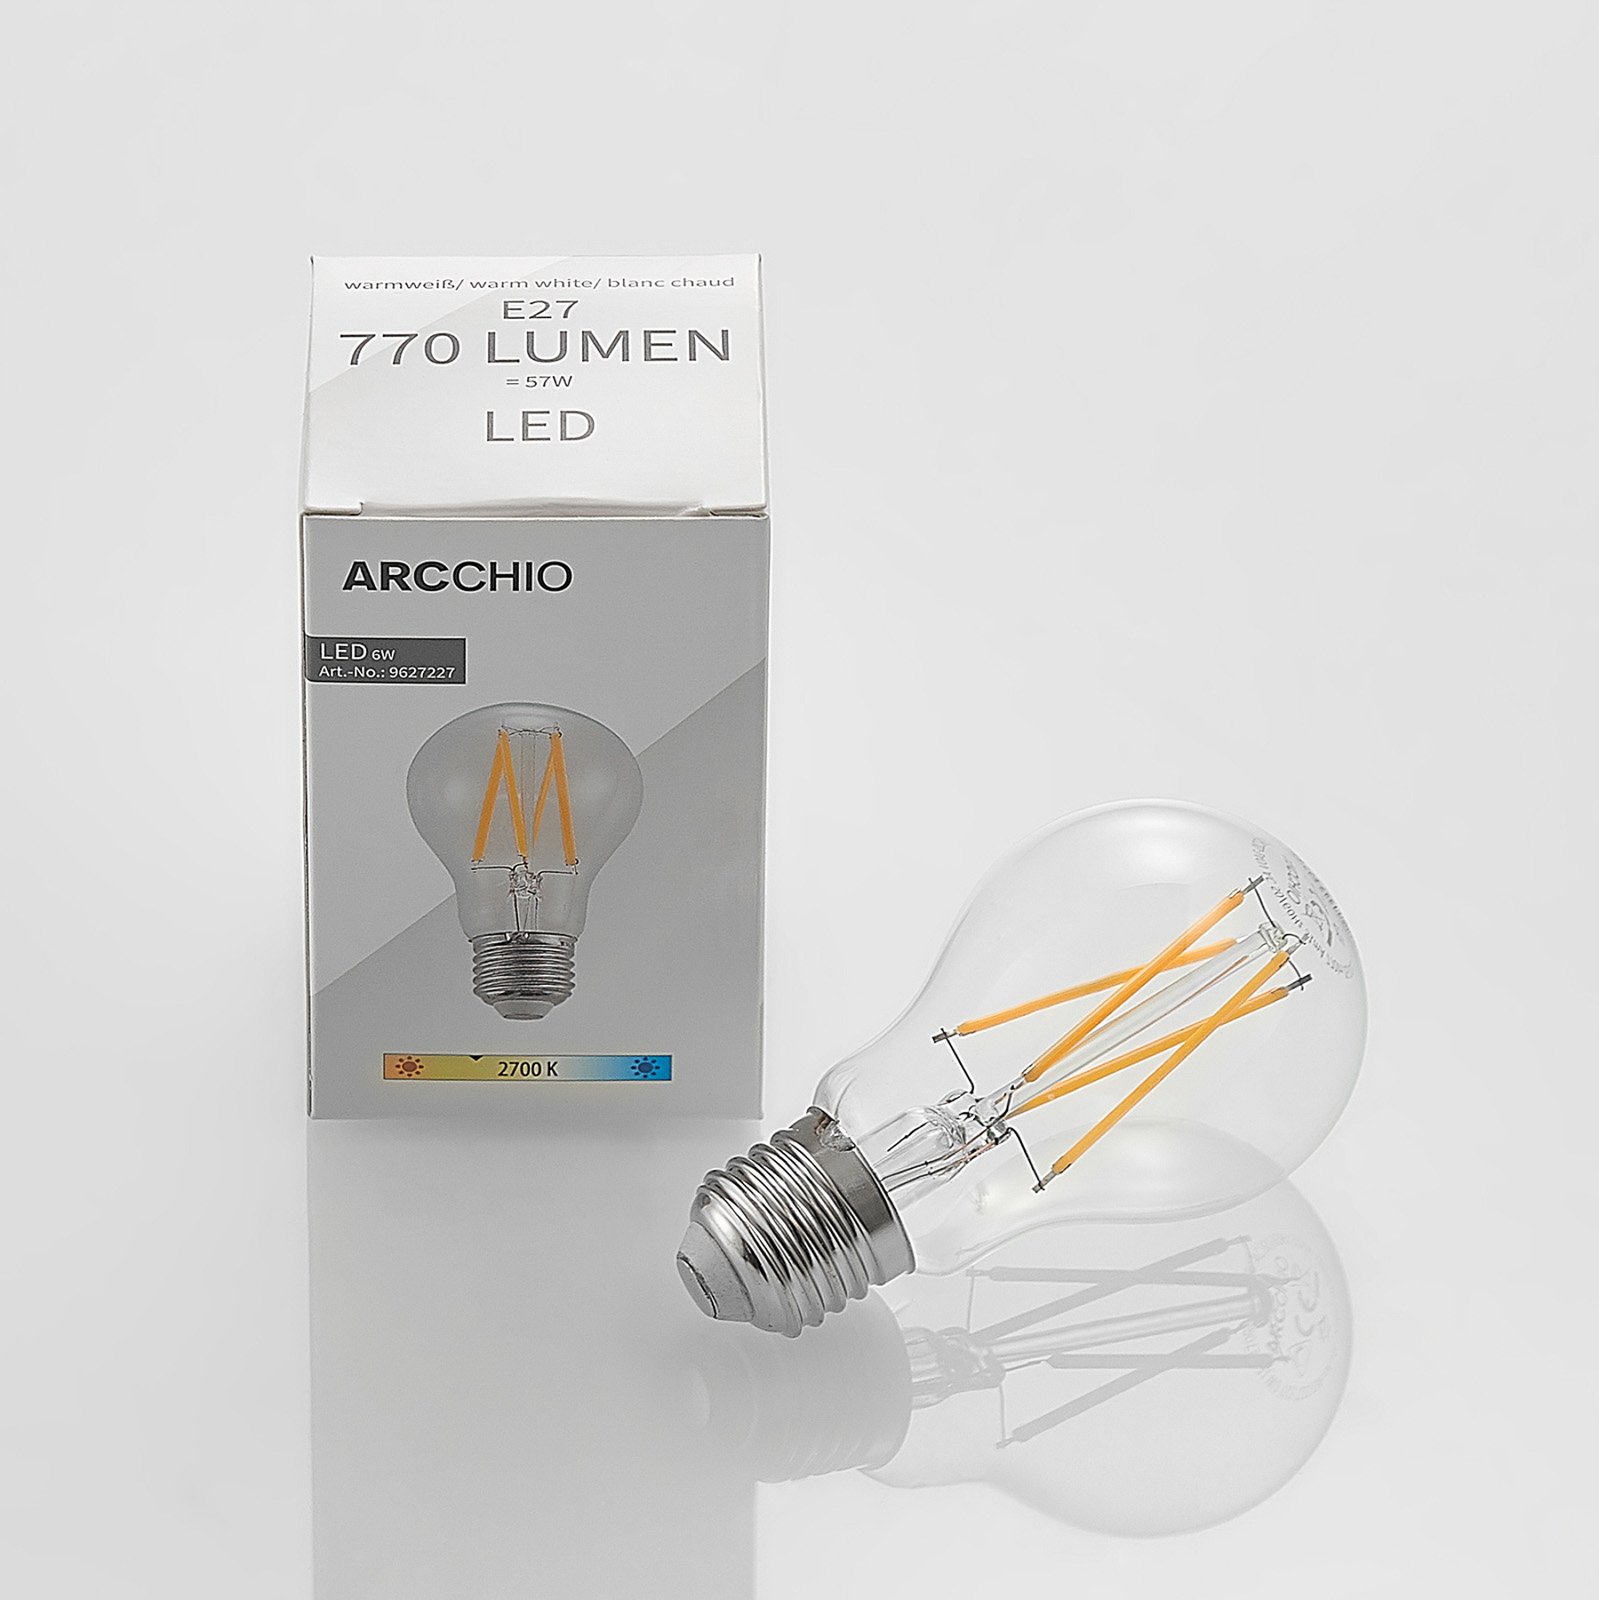 LED-Lampe E27 6W 2.700K Filament,dimmbar klar 2er